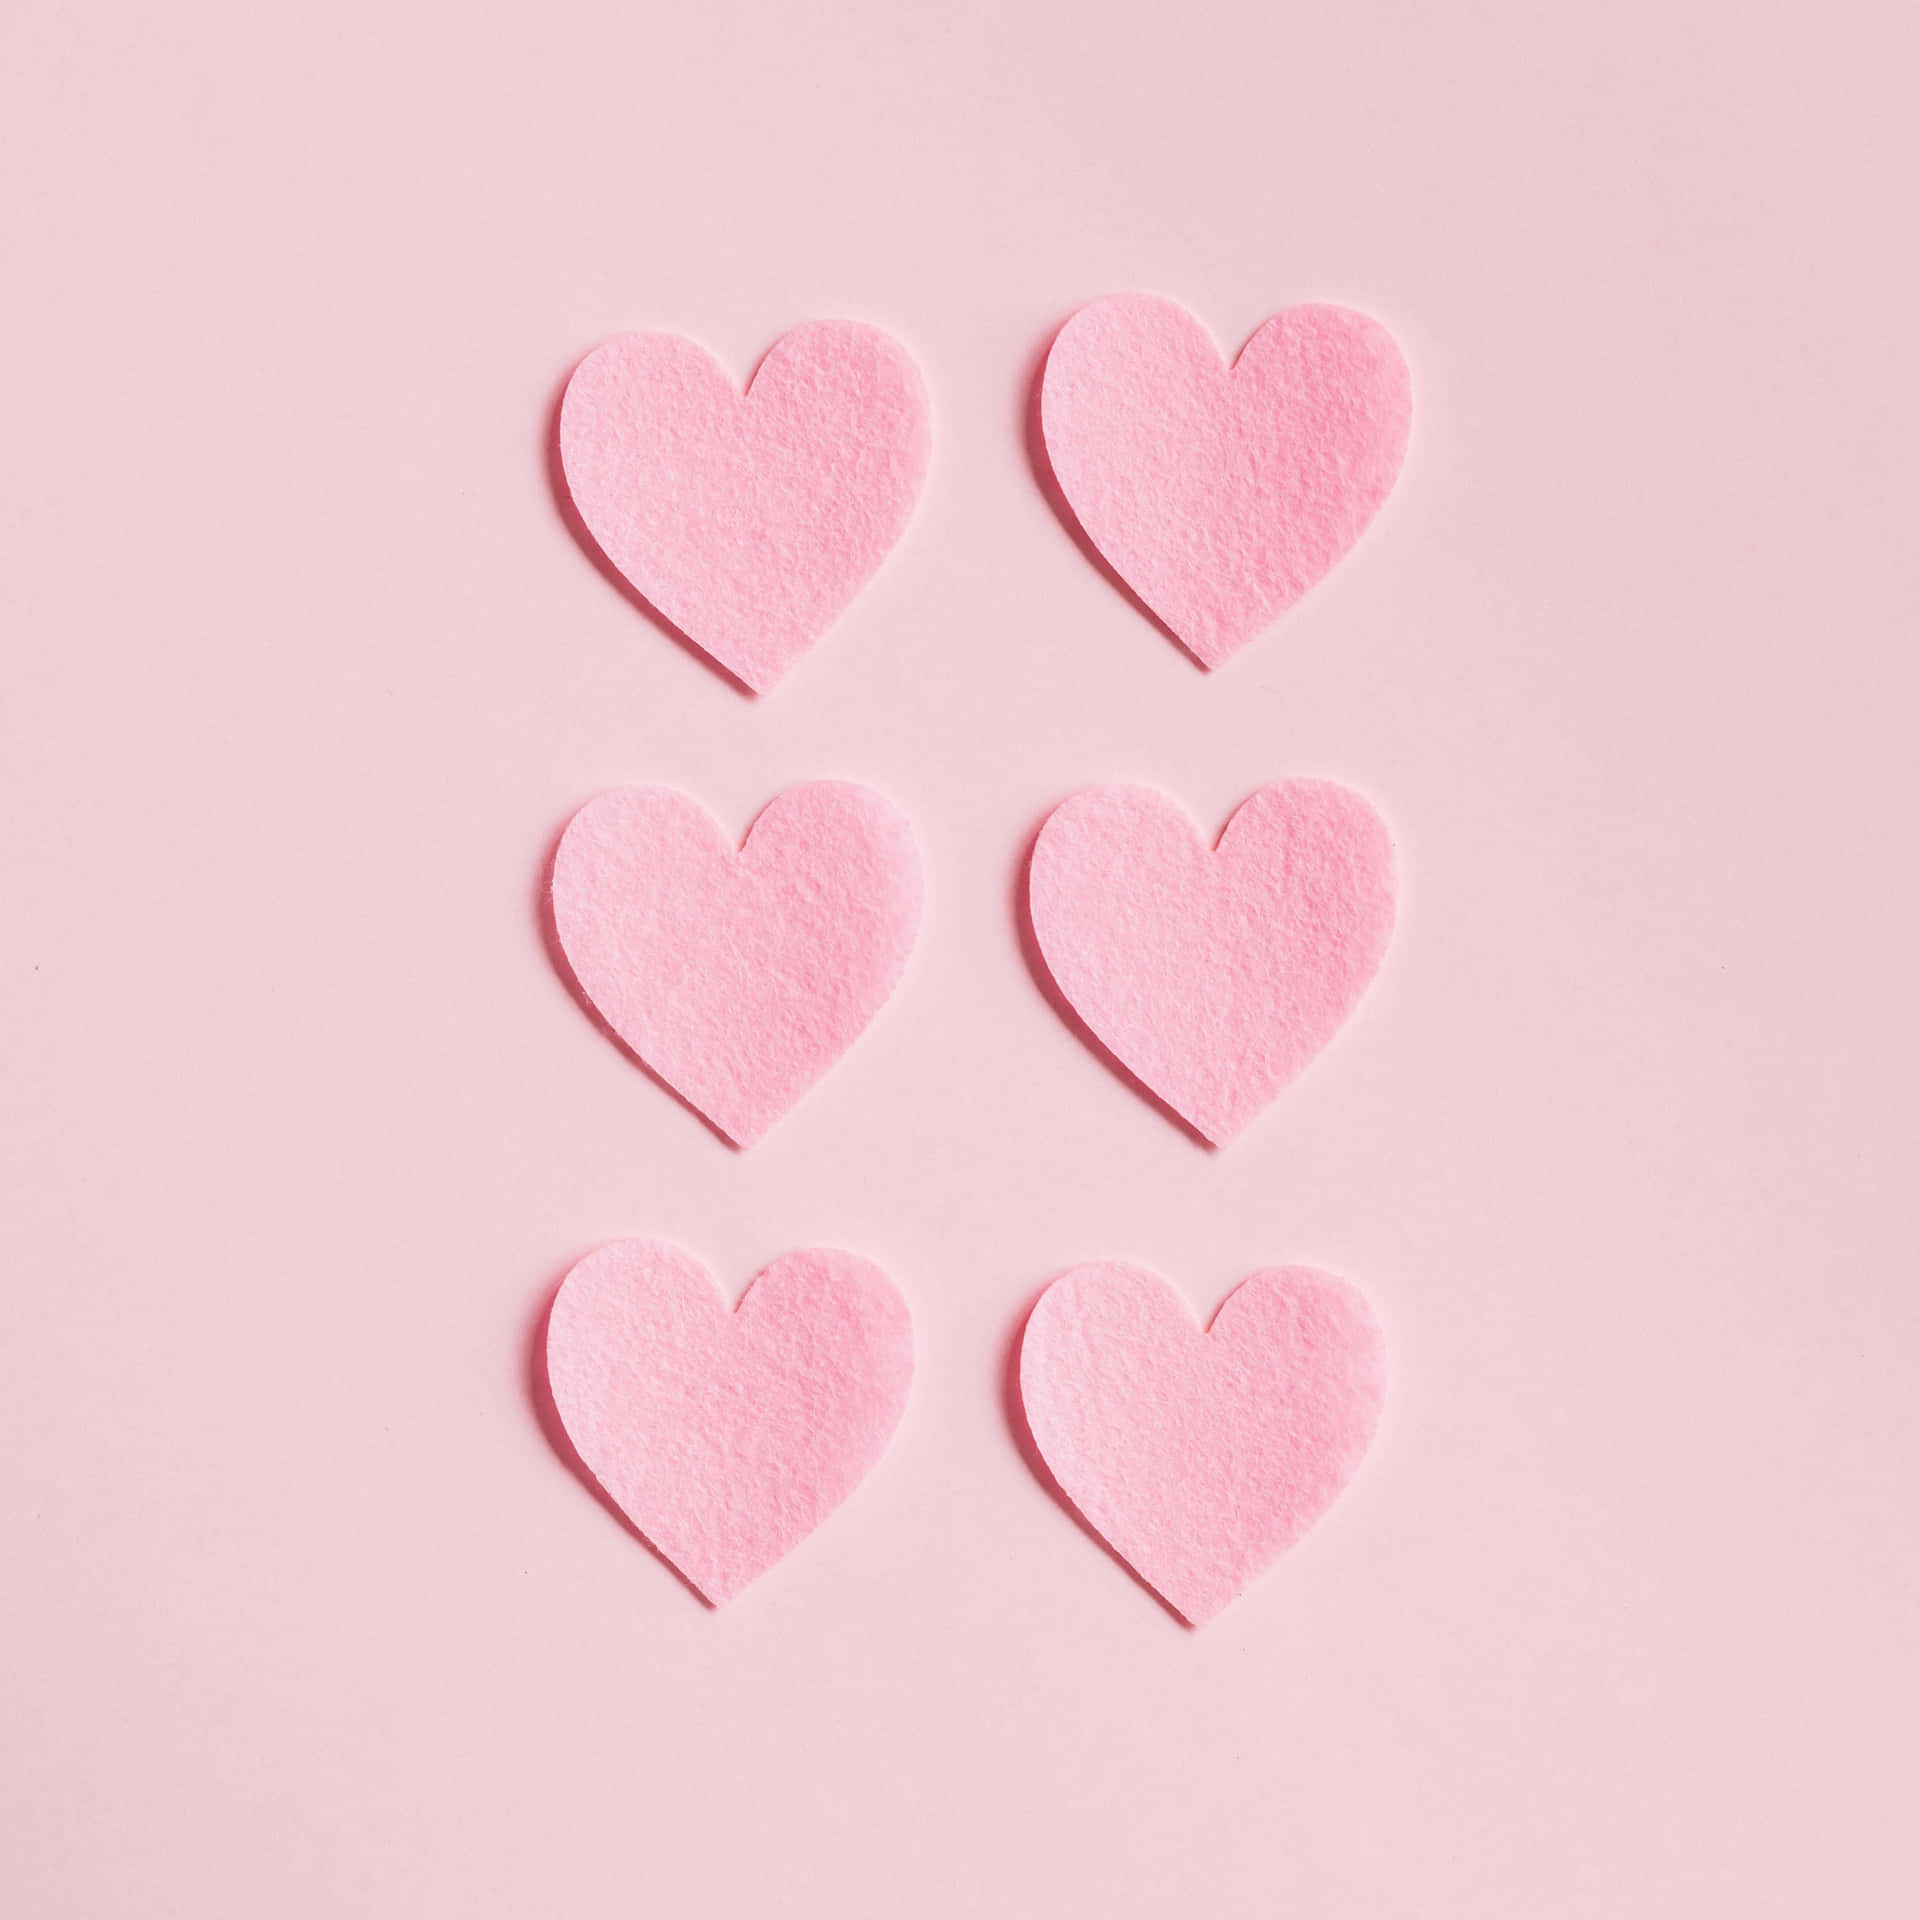 Pink Ipad Pro Paper Hearts Wallpaper